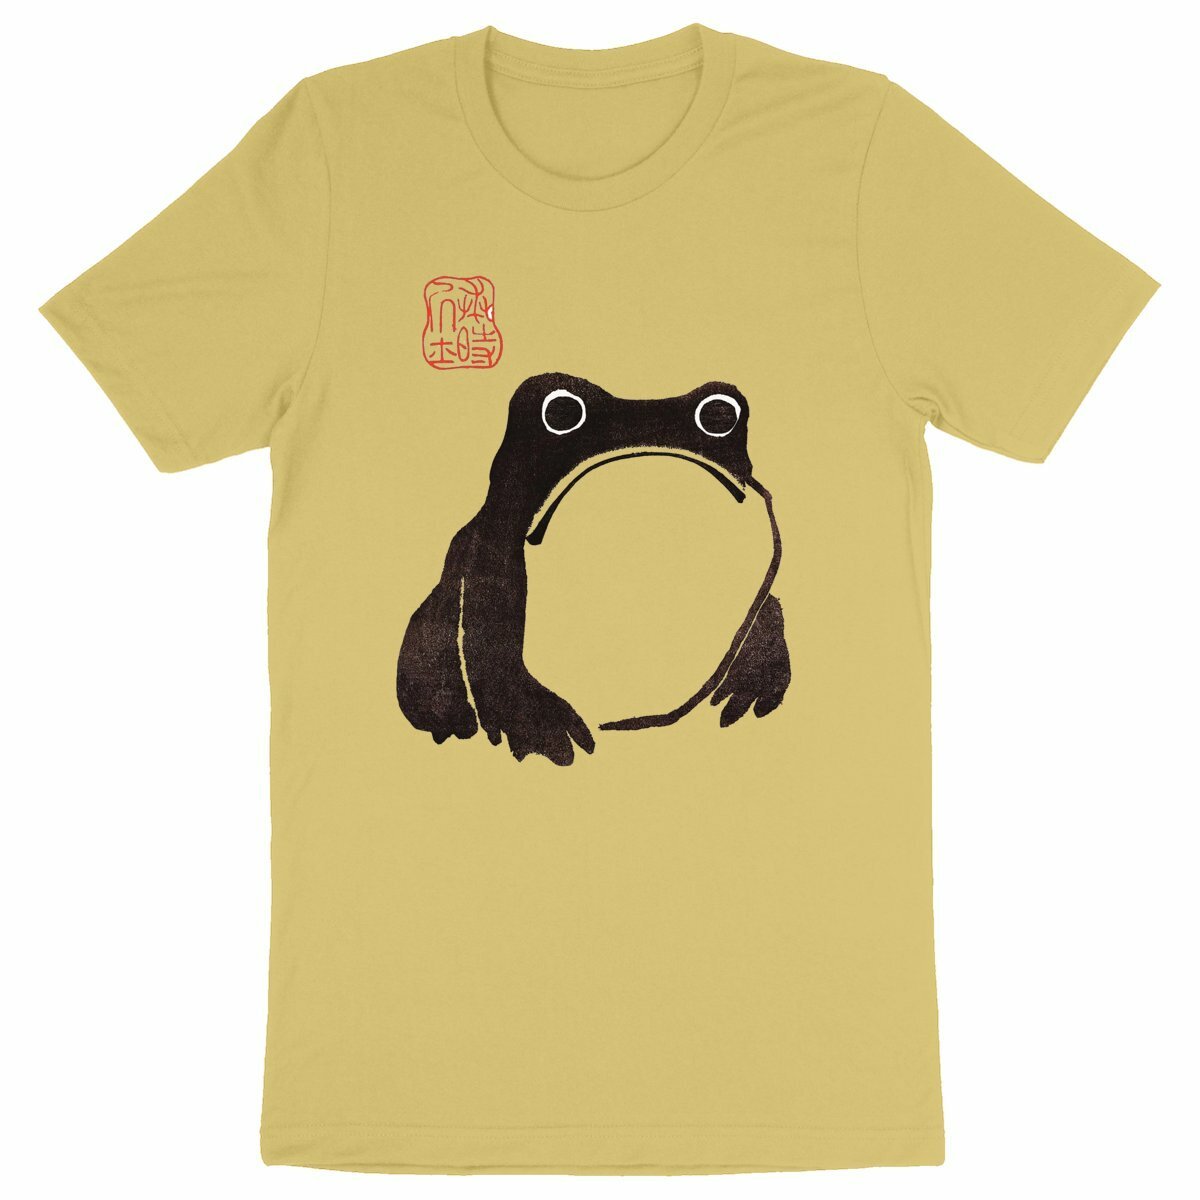  Frog from Meika Gafu, 1814 - Organic Cotton T-Shirt